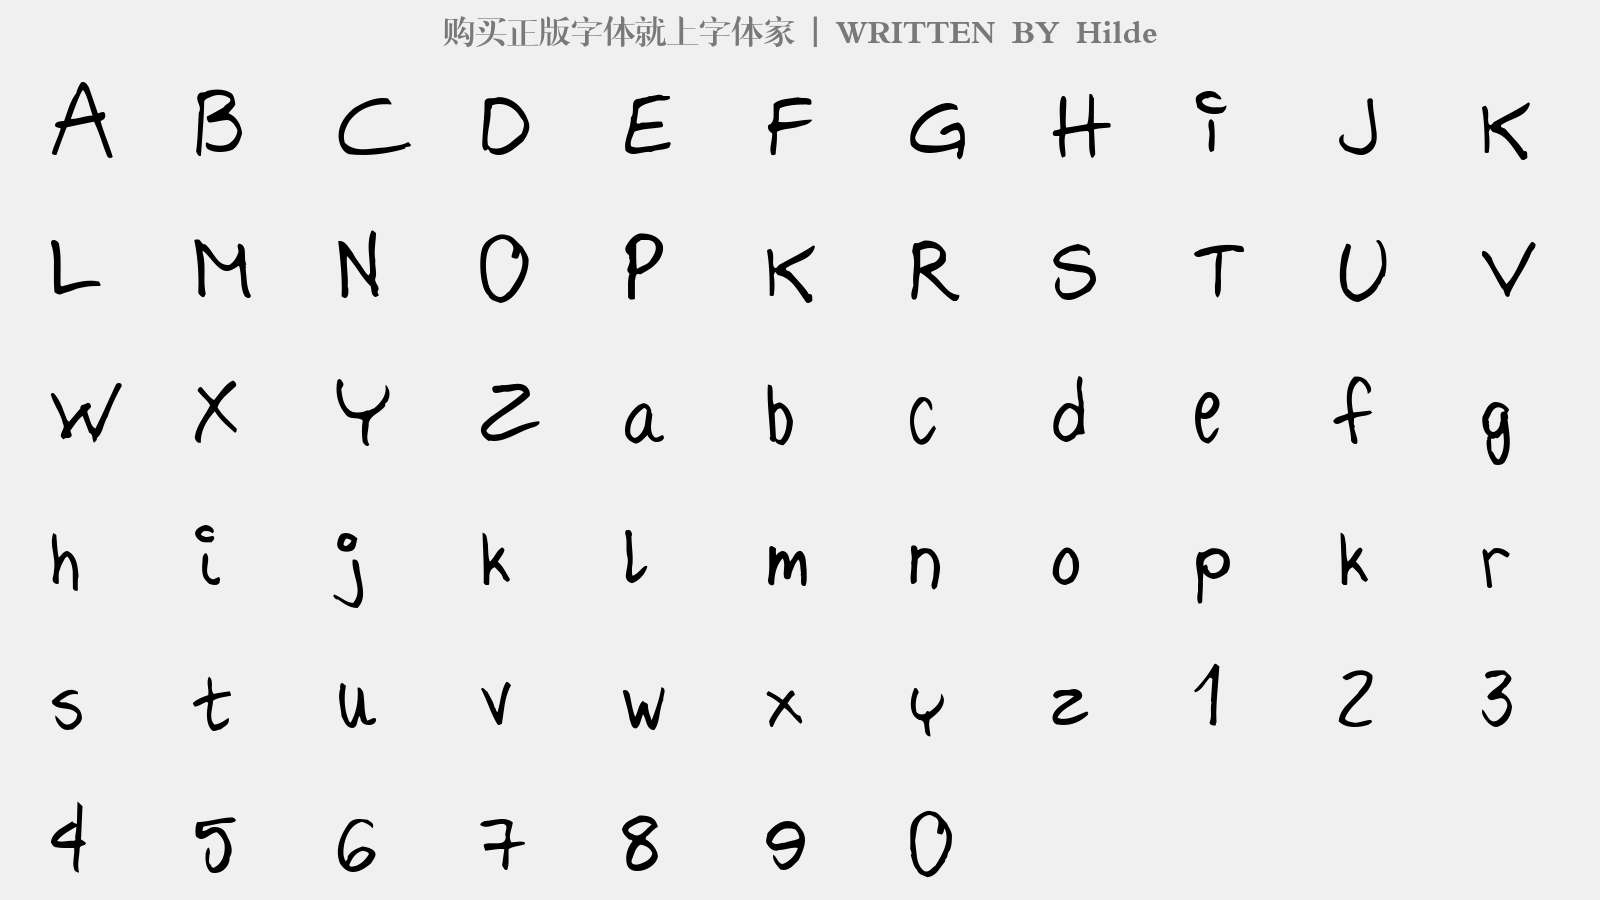 Hilde - 大写字母/小写字母/数字